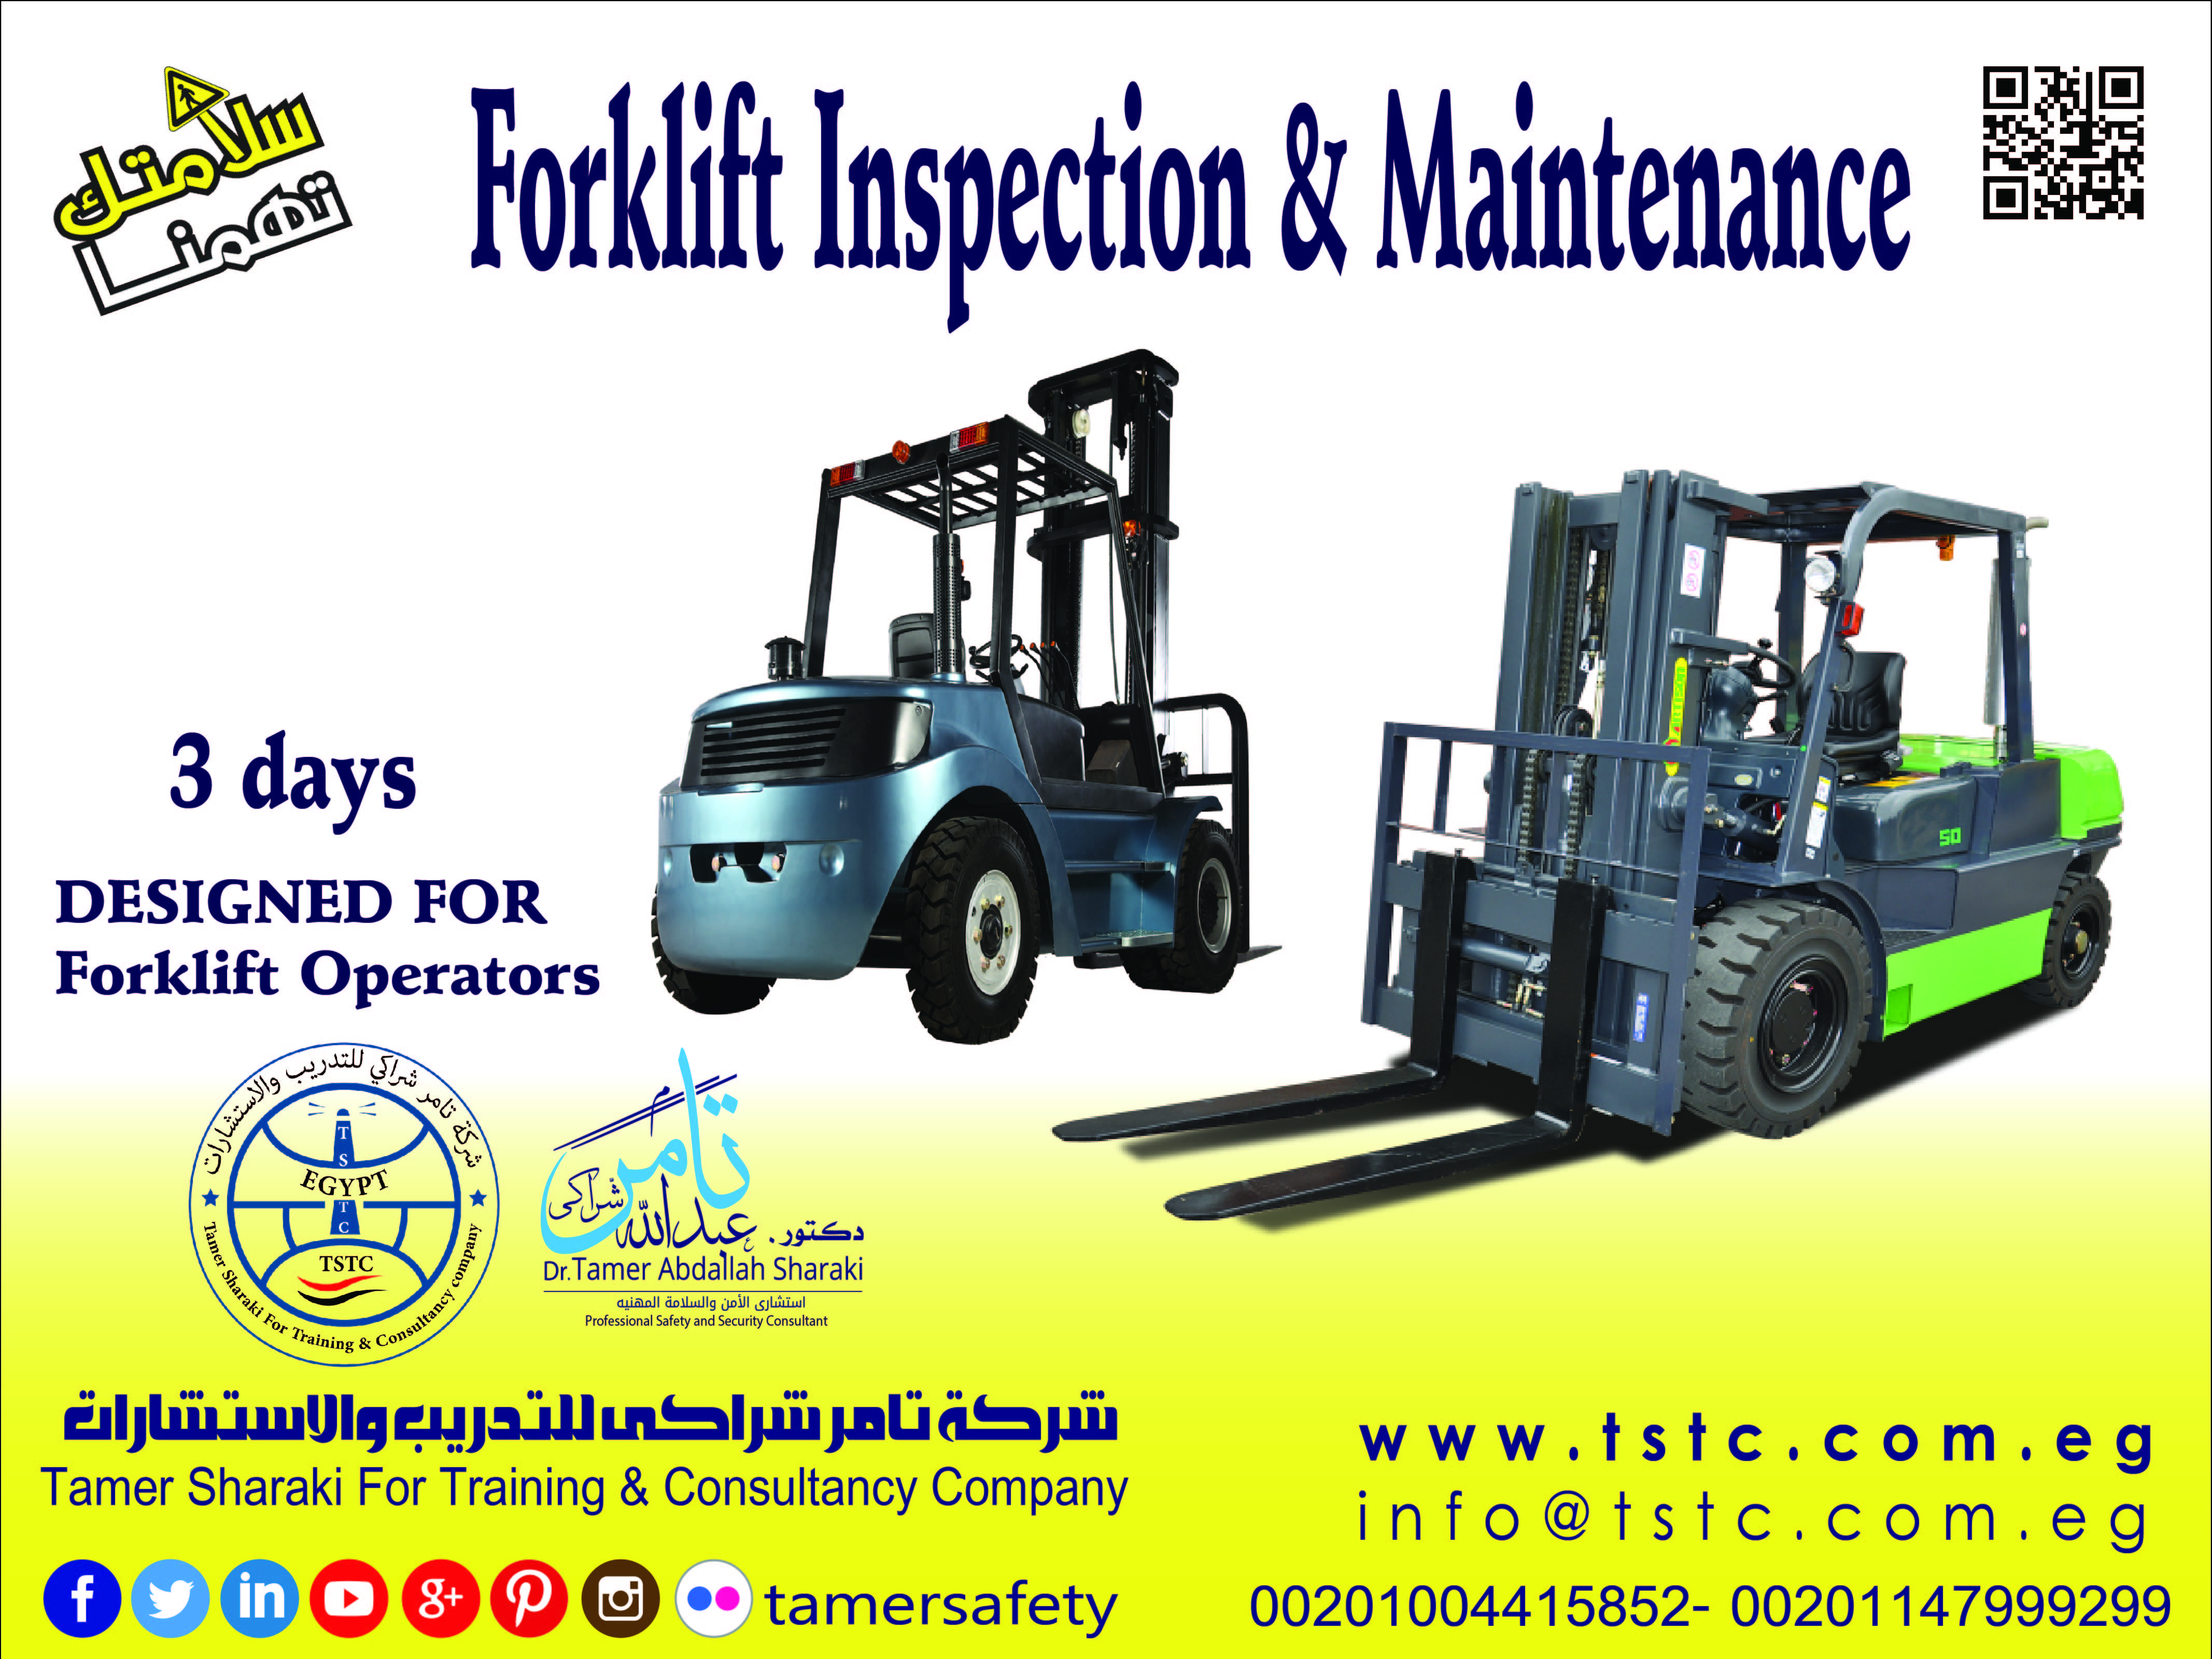 التفتيش والصيانة للرافعات الشوكية  Forklift Inspection & Maintenance